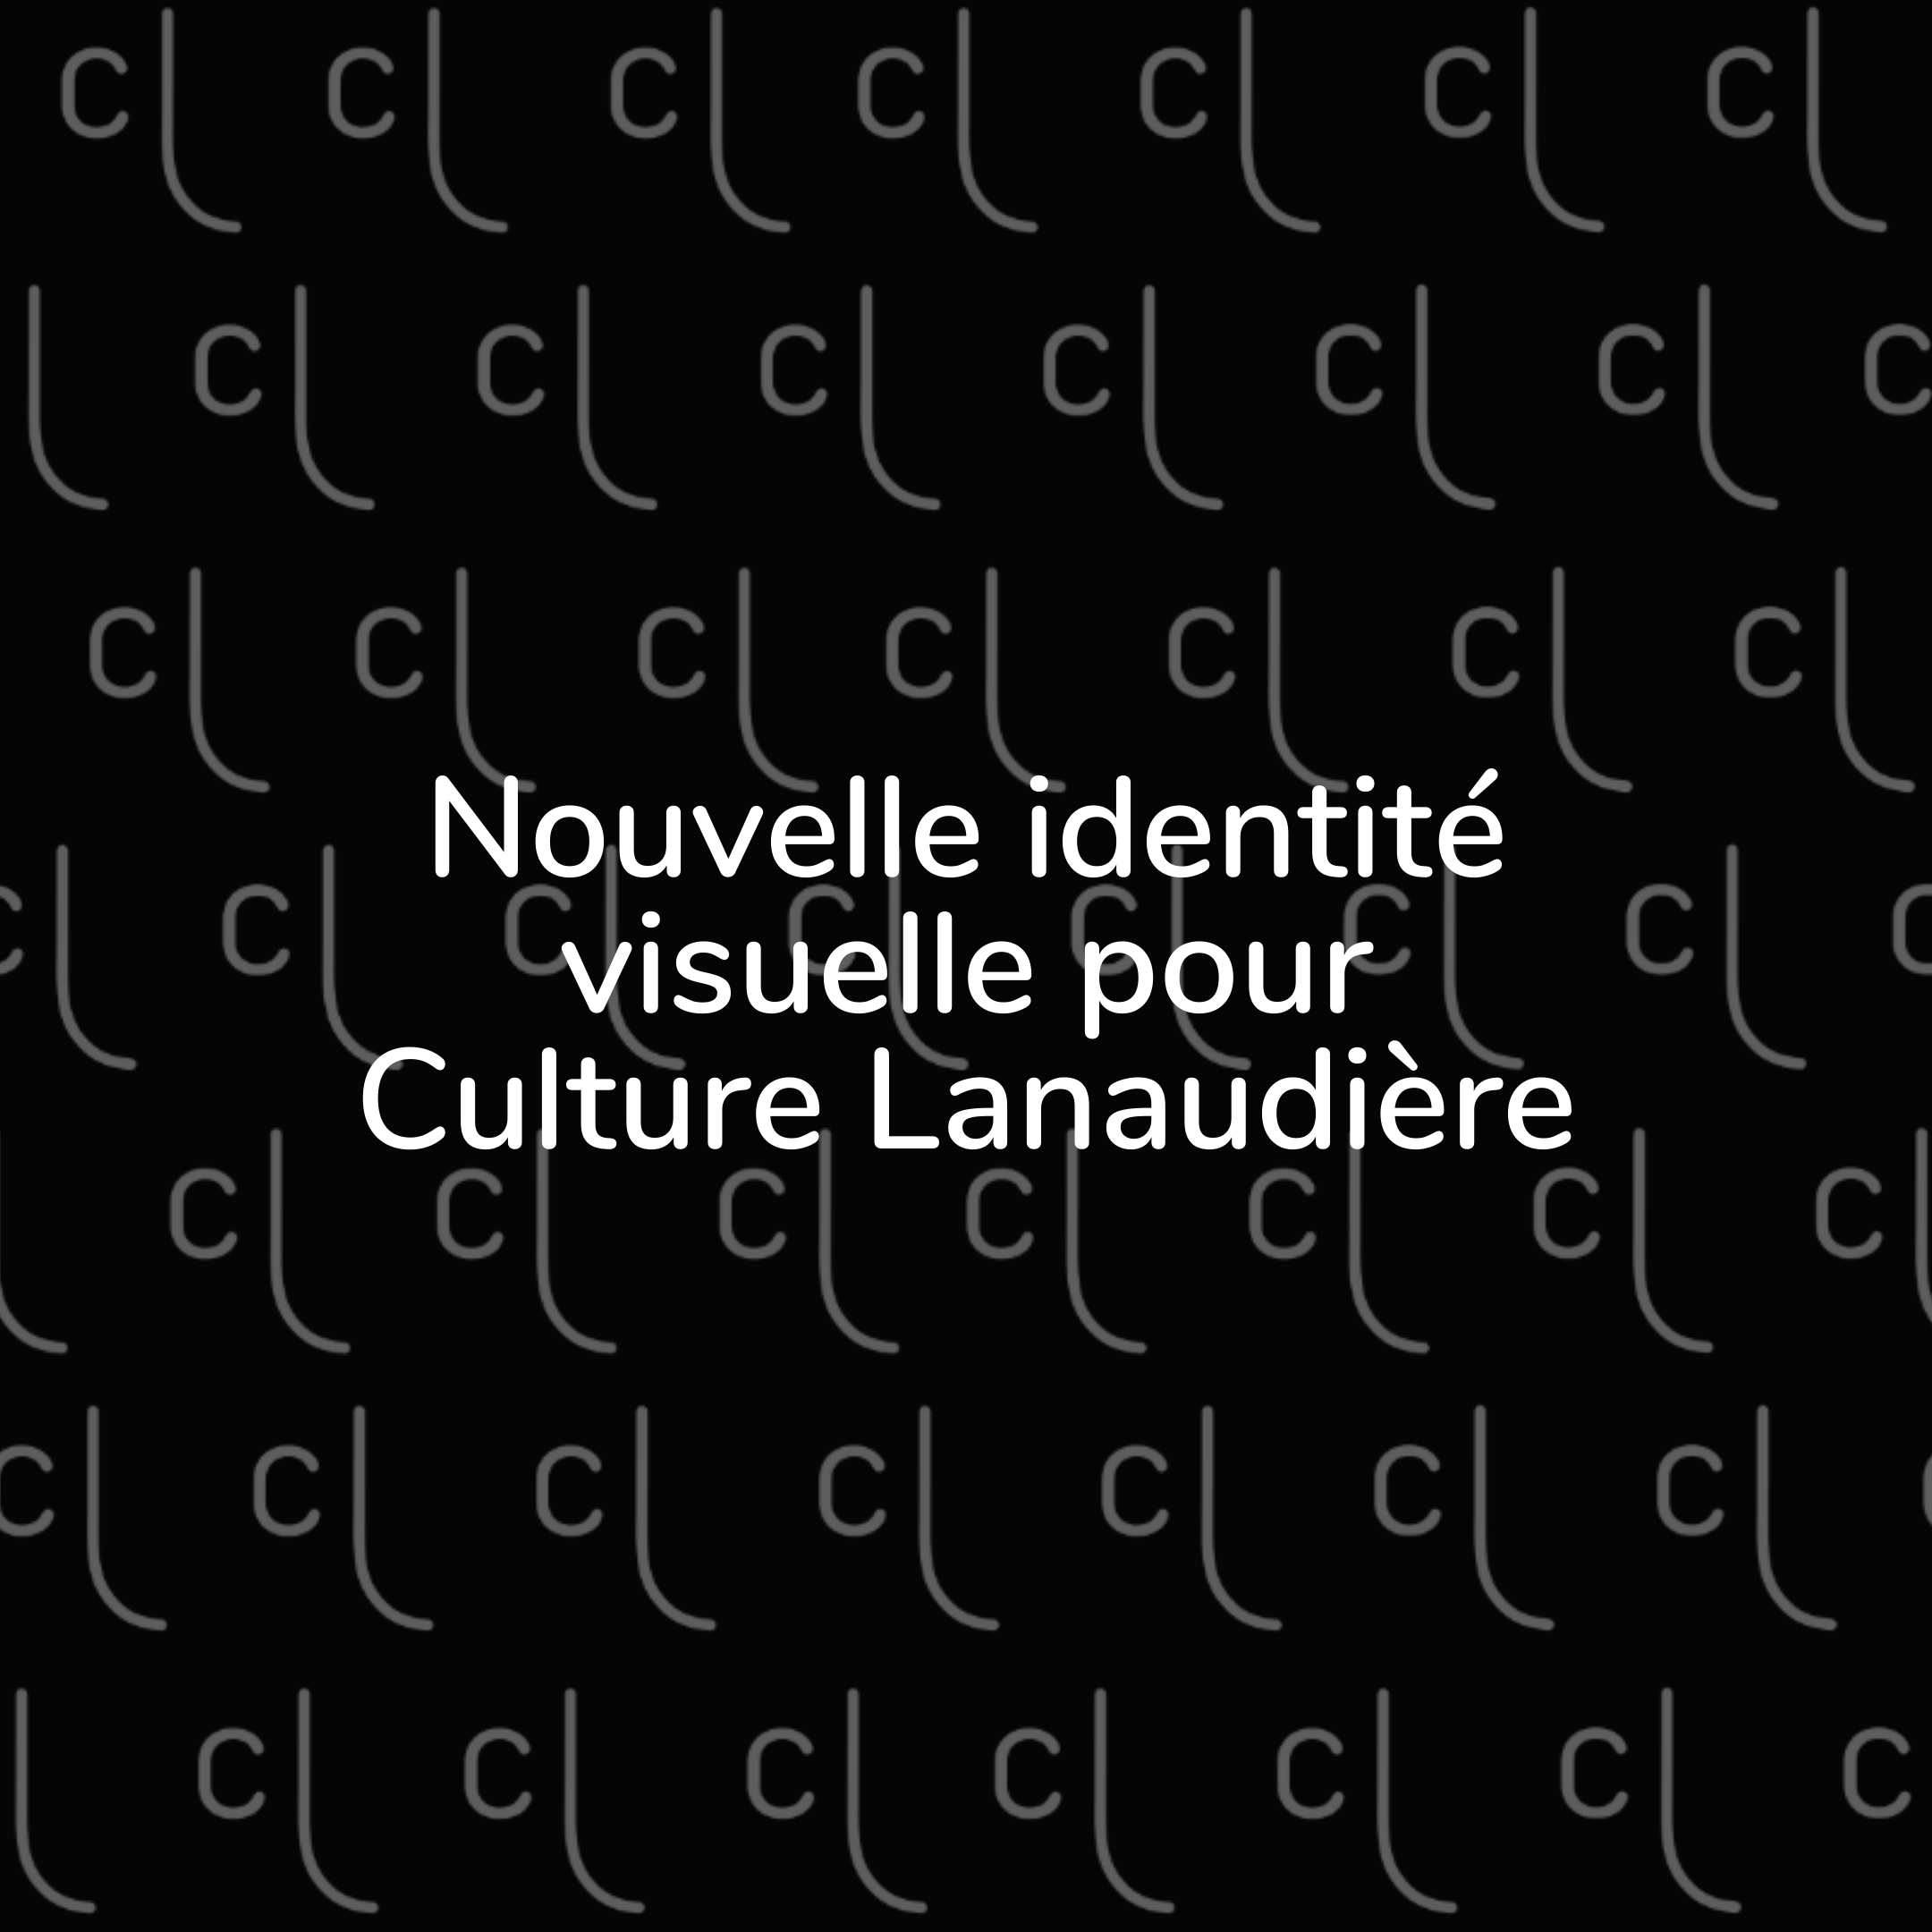 Pour tout savoir sur le nouveau logo de Culture Lanaudière